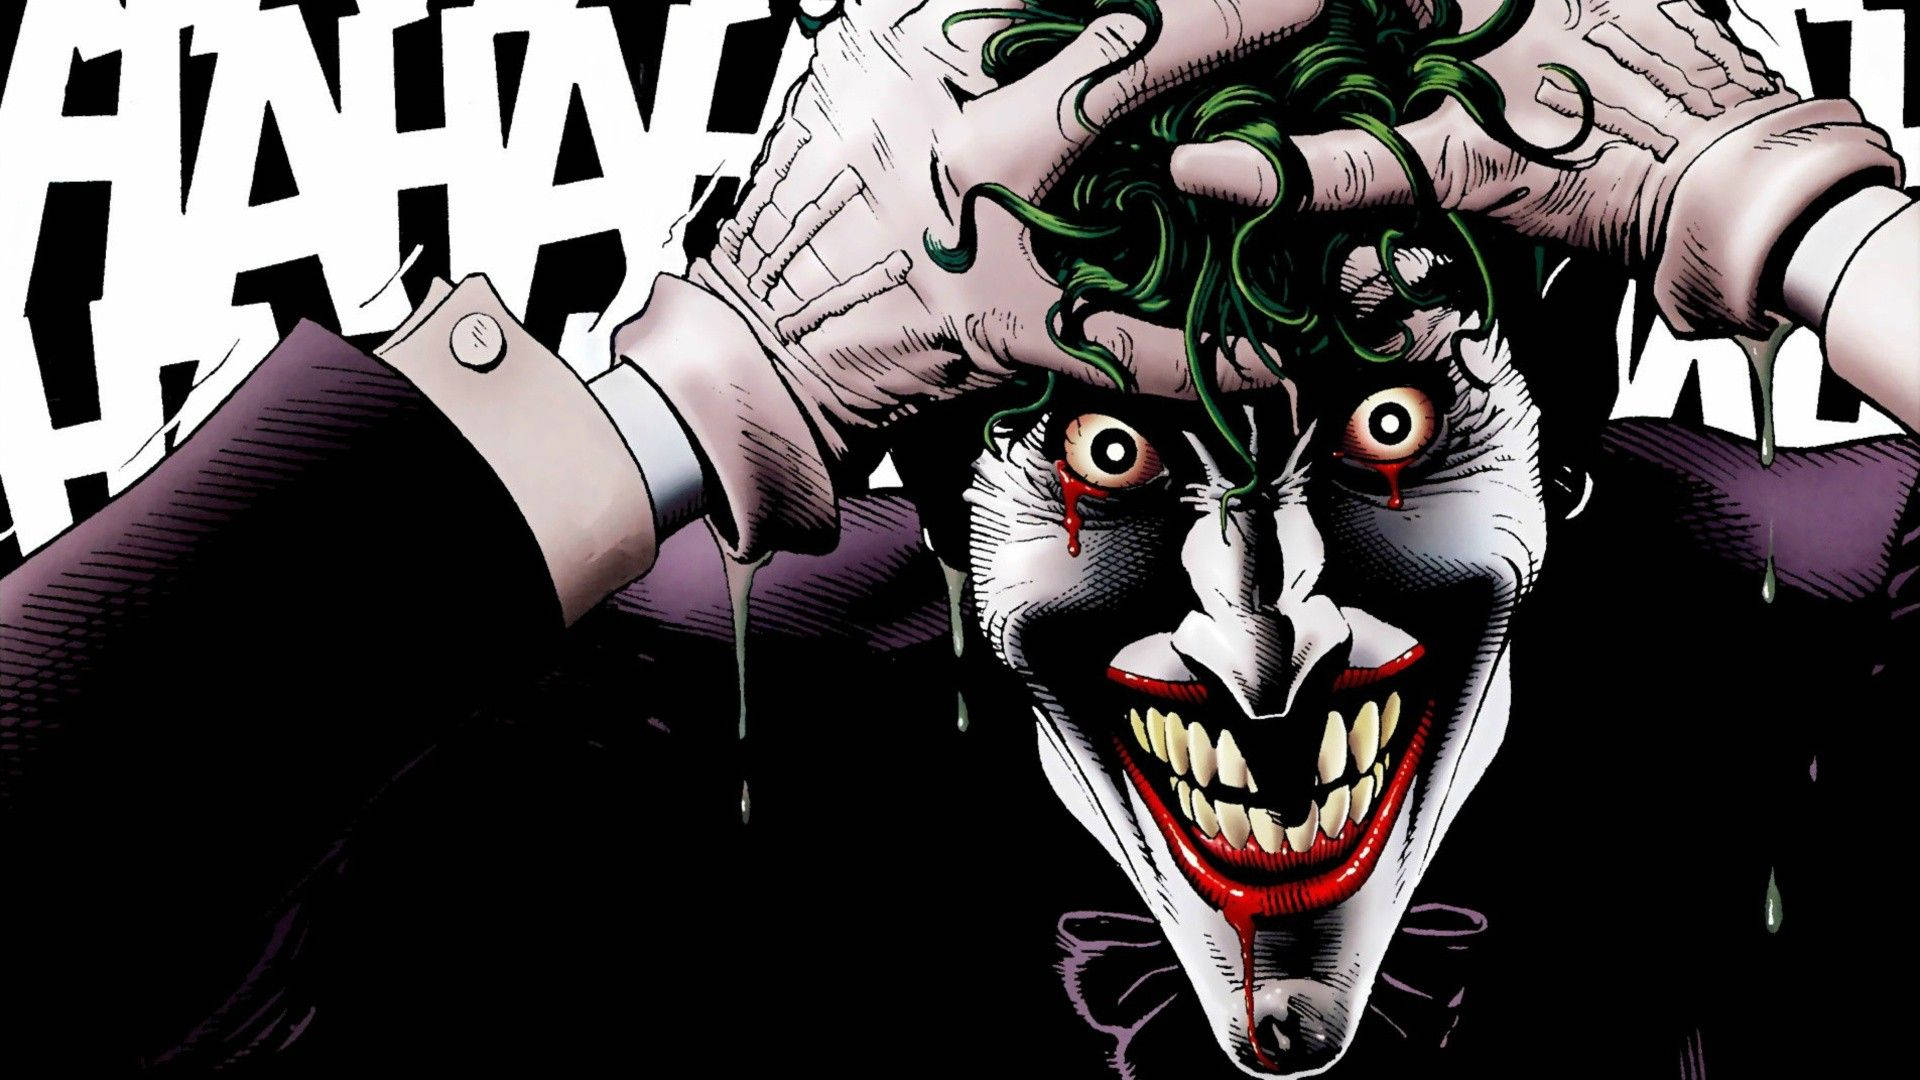 Crazy Joker Bleeding Face Wallpaper